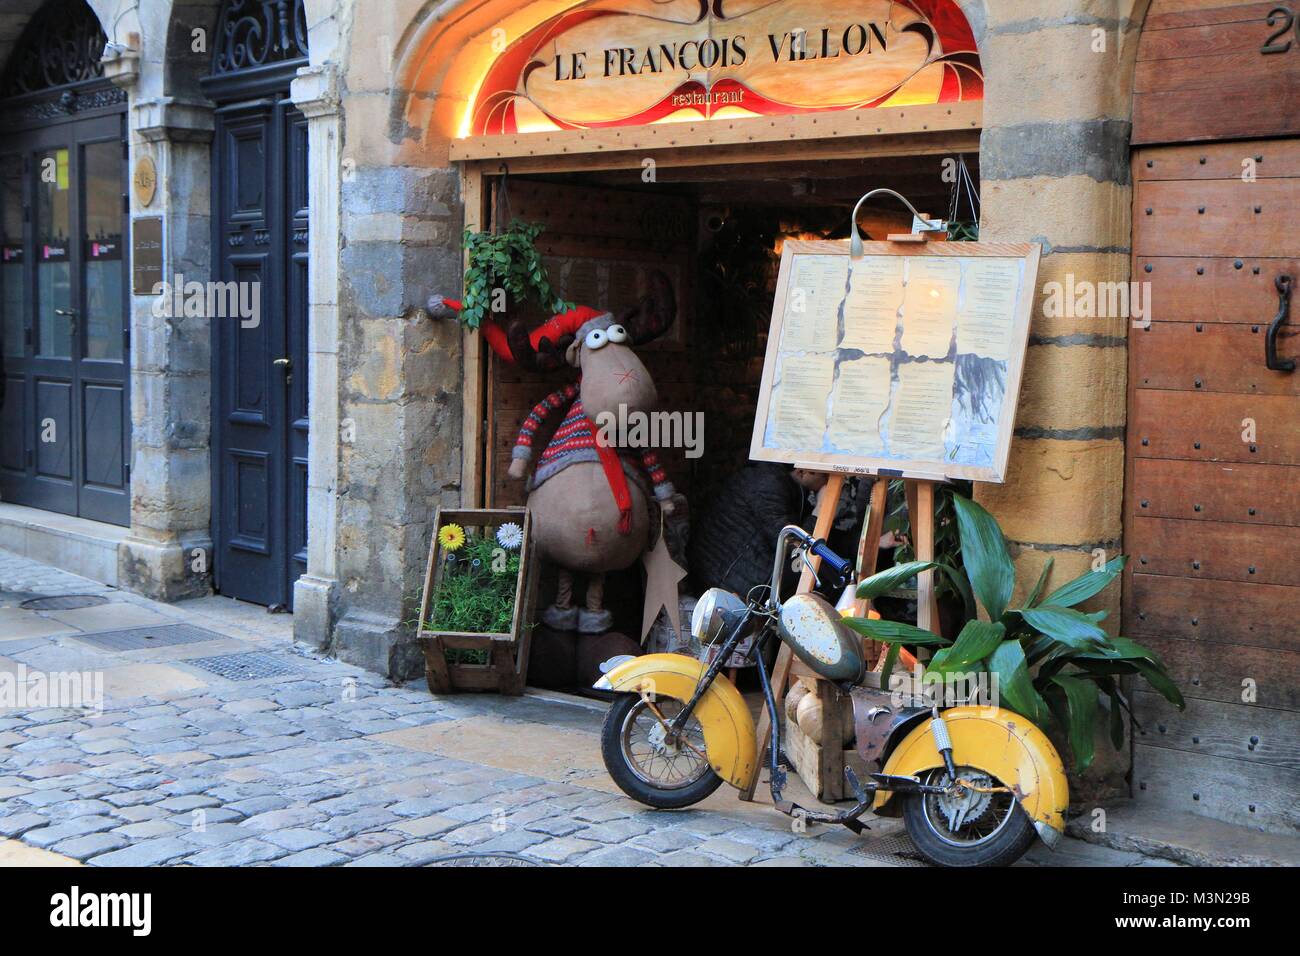 Scena di strada nella città vecchia di Lione, Francia Foto Stock